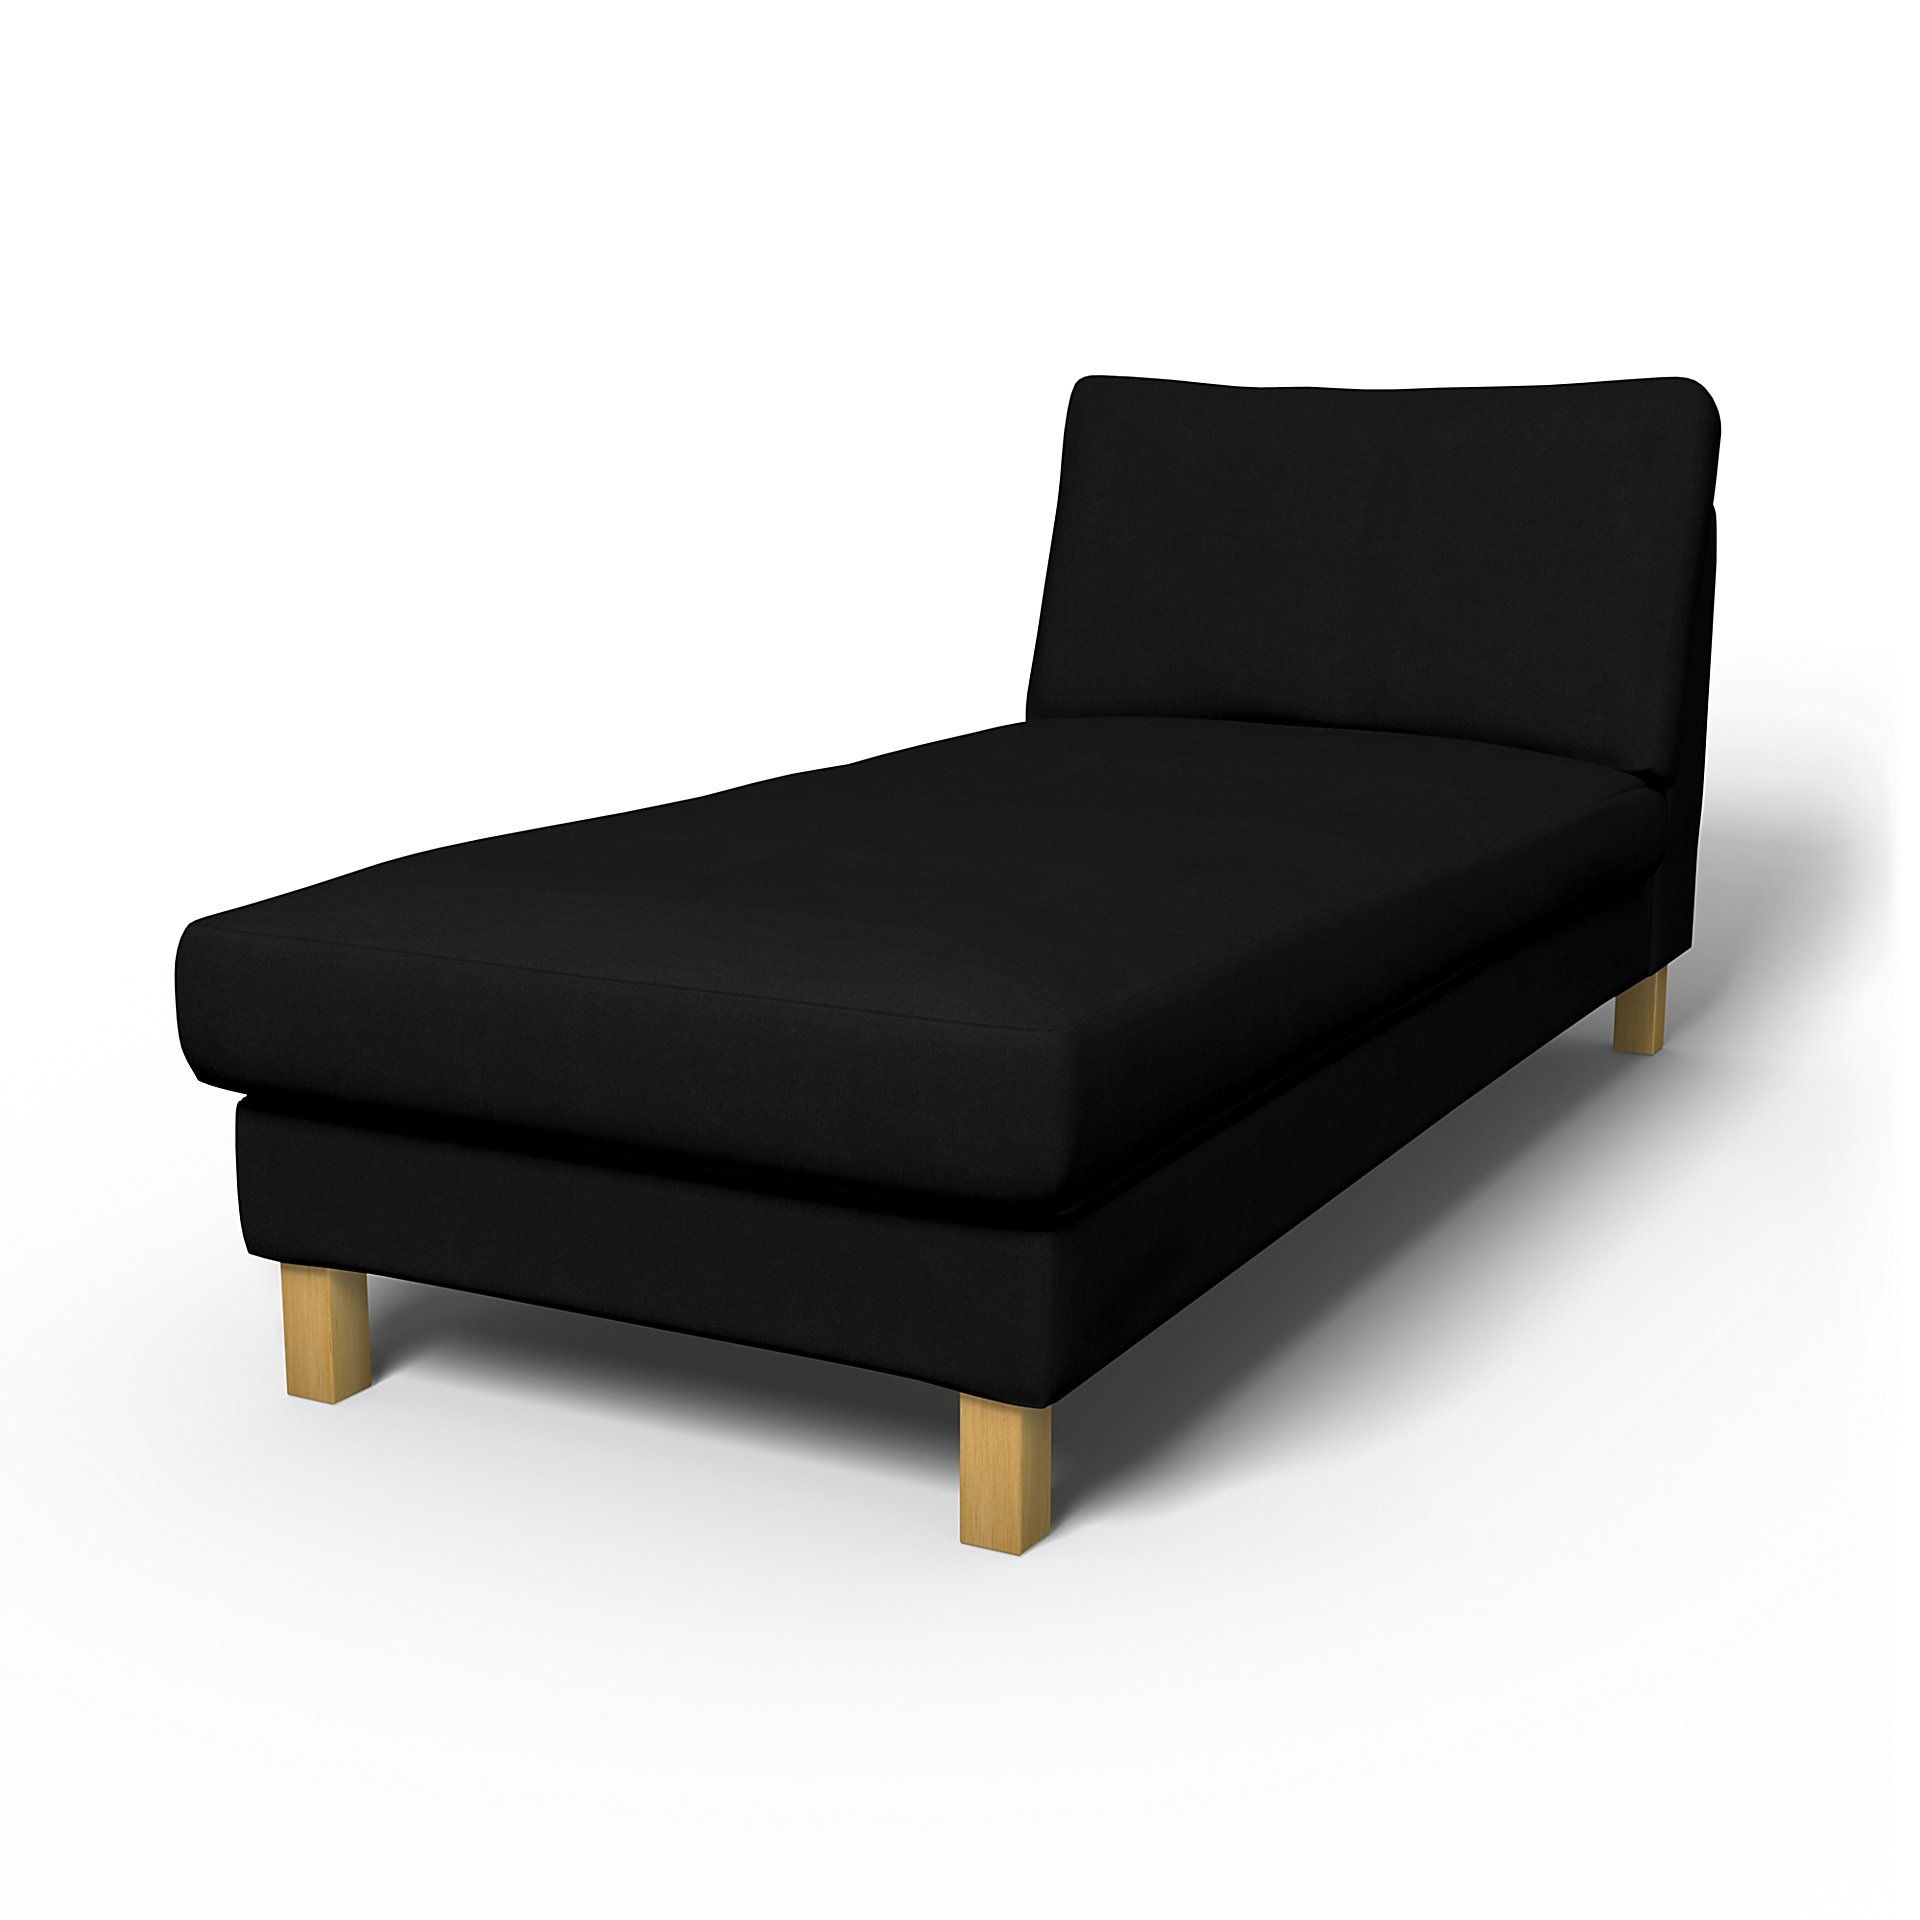 IKEA - Karlstad Stand Alone Chaise Longue Cover, Black, Velvet - Bemz